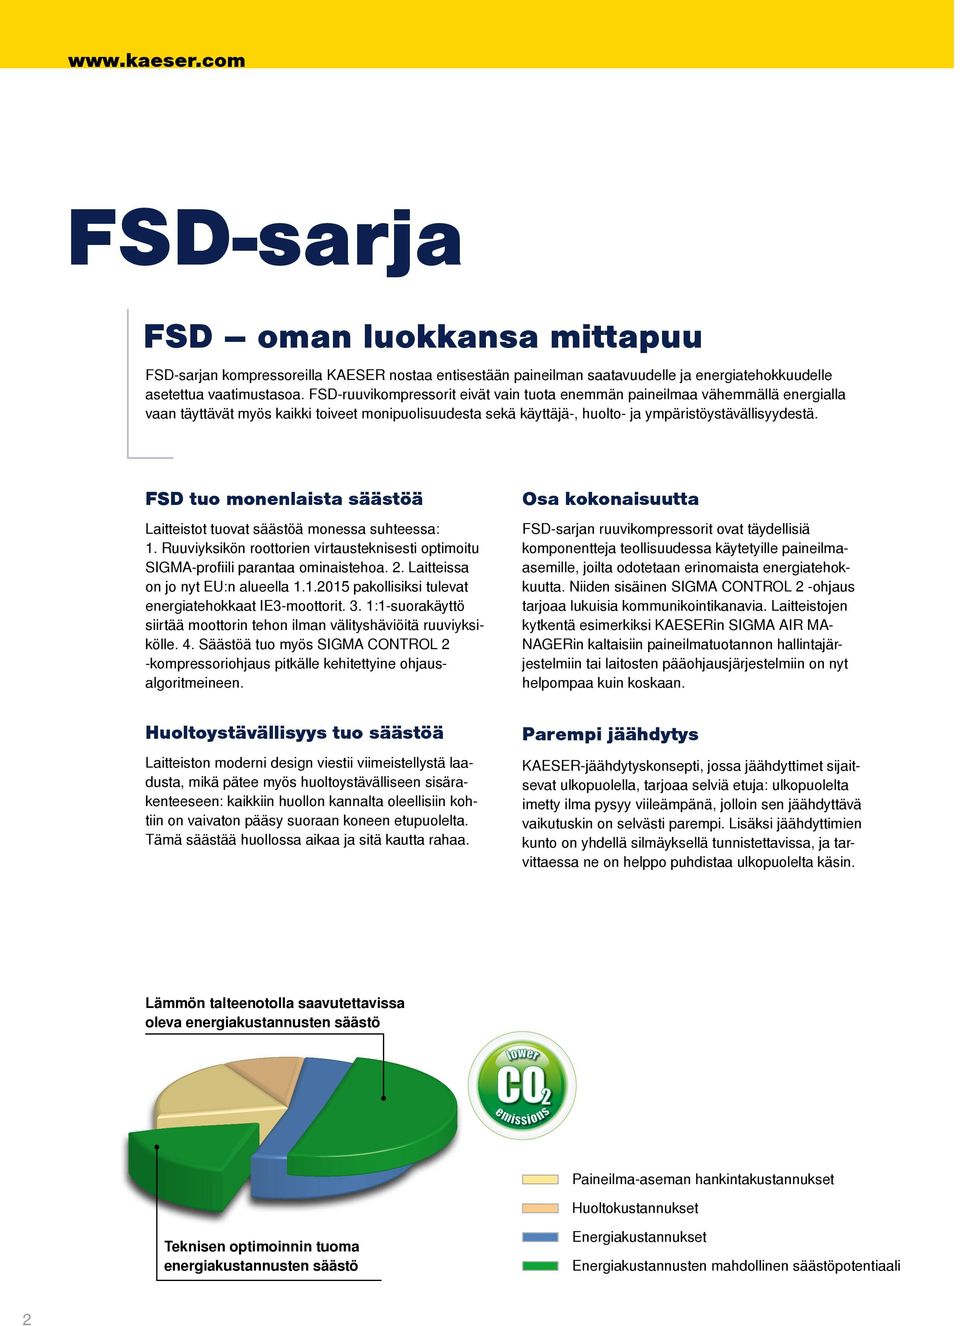 FSD tuo monenlaista säästöä Laitteistot tuovat säästöä monessa suhteessa:. Ruuviyksikön roottorien virtausteknisesti optimoitu SIGMA-profiili parantaa ominaistehoa.. Laitteissa on jo nyt EU:n alueella.